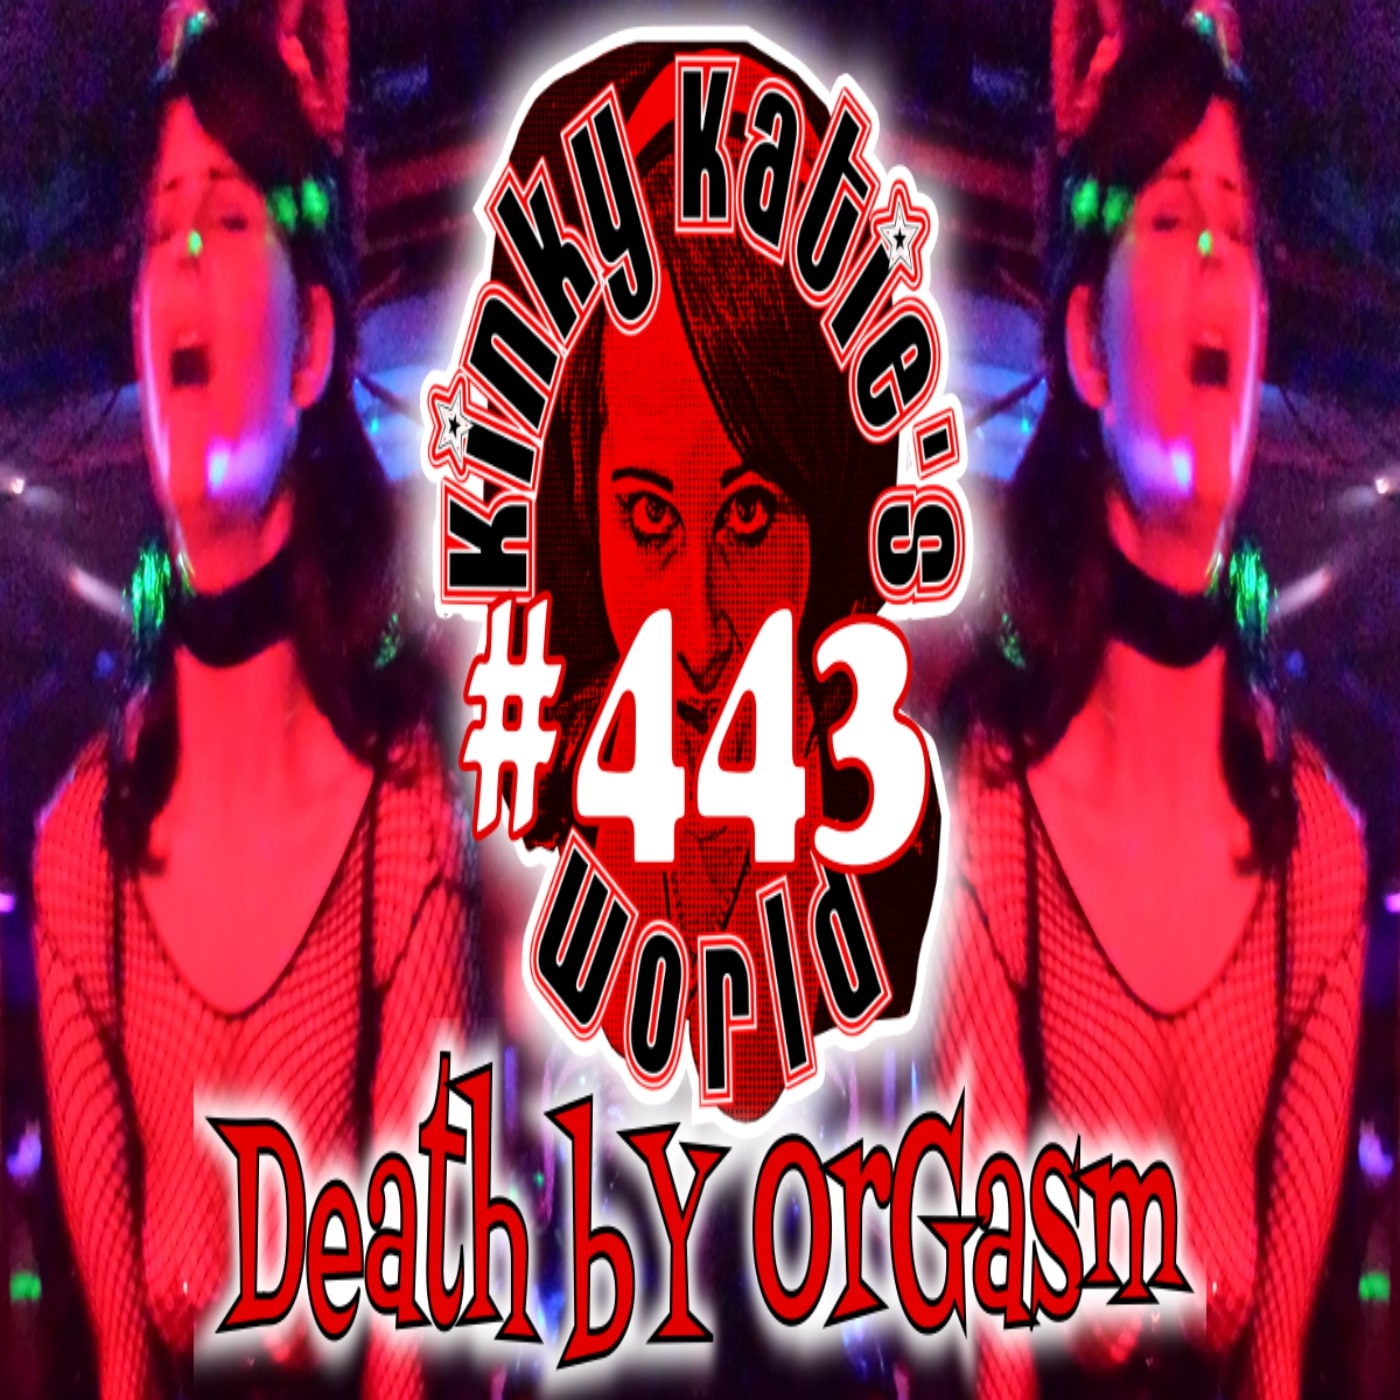 #443 – Death by Orgasm